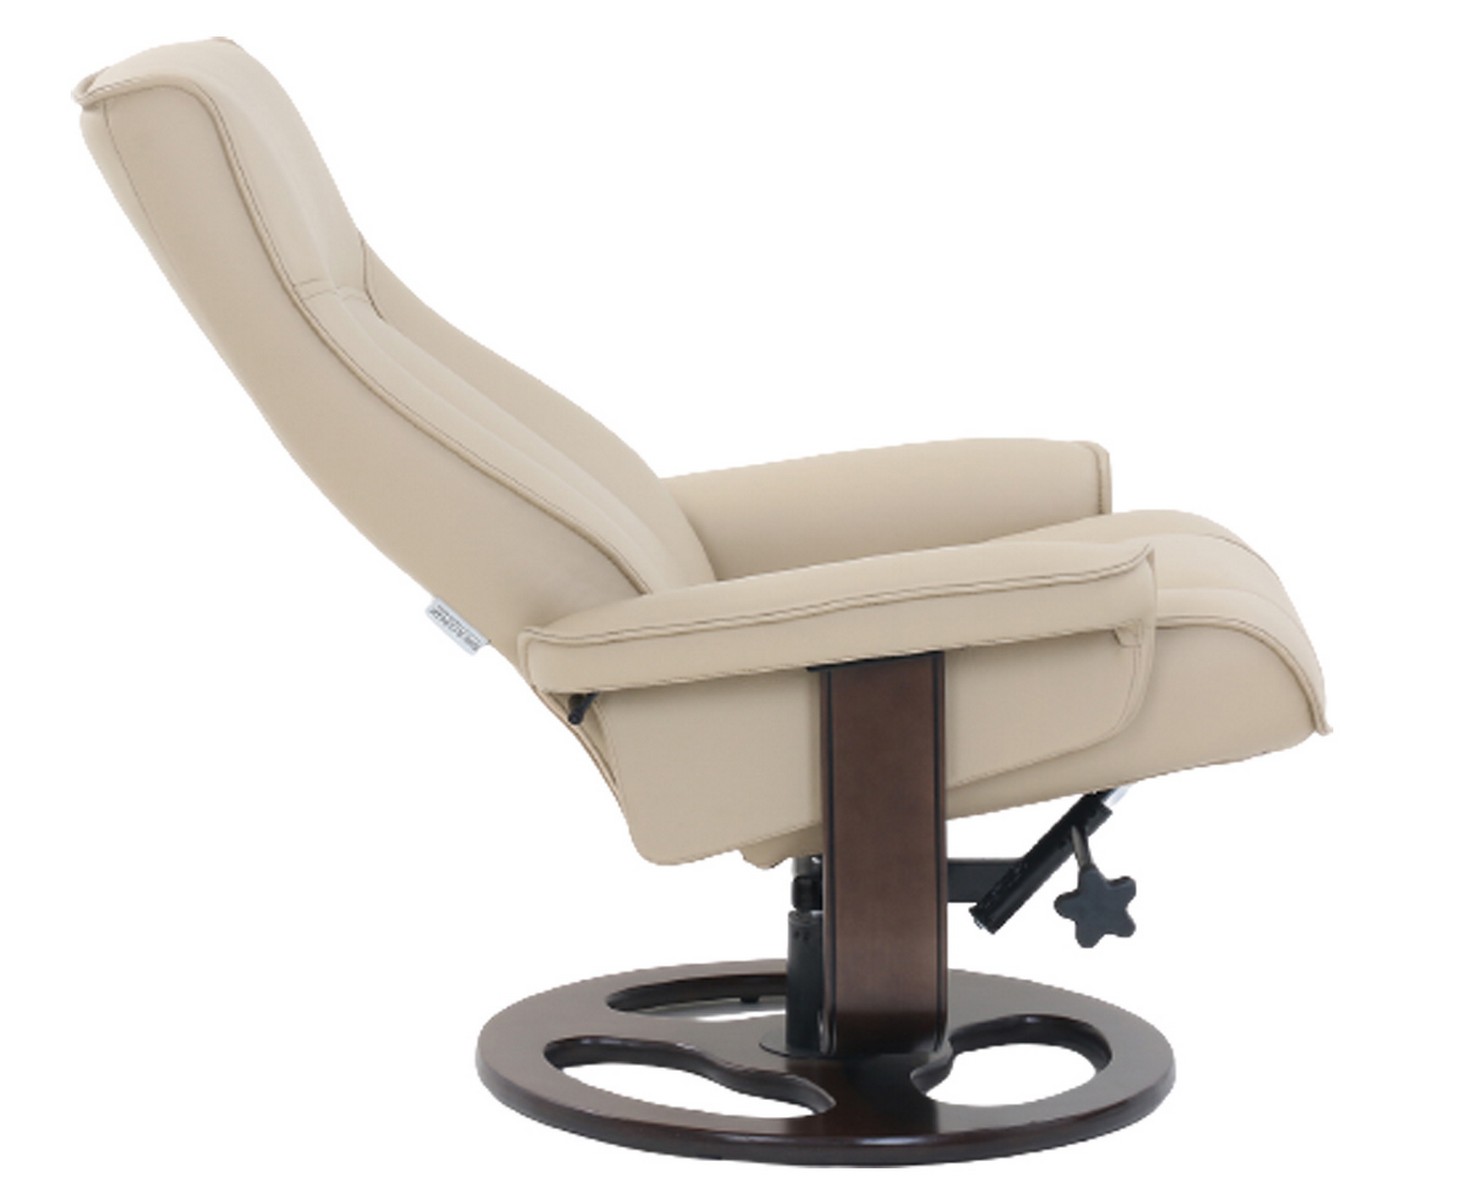 Barcalounger Austin Pedestal Recliner Chair/Ottoman - Hilton Ivory/Leather Match